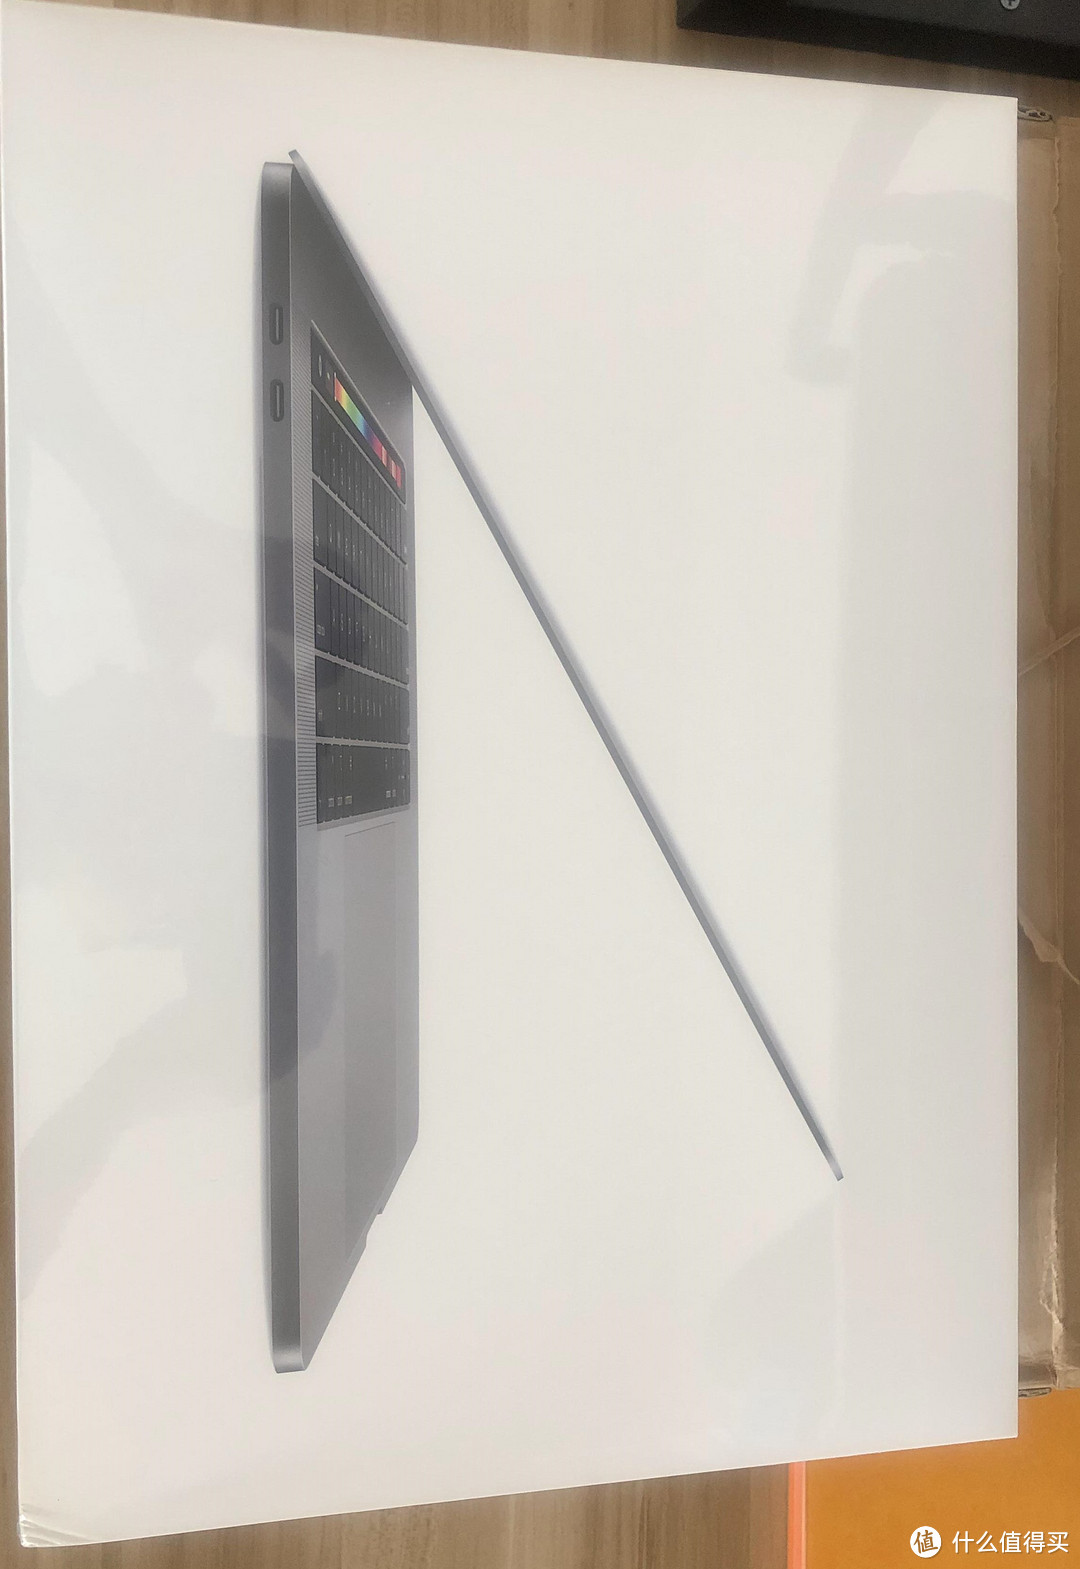 拼XX 买的Macbook Pro 2019 顺利下车！